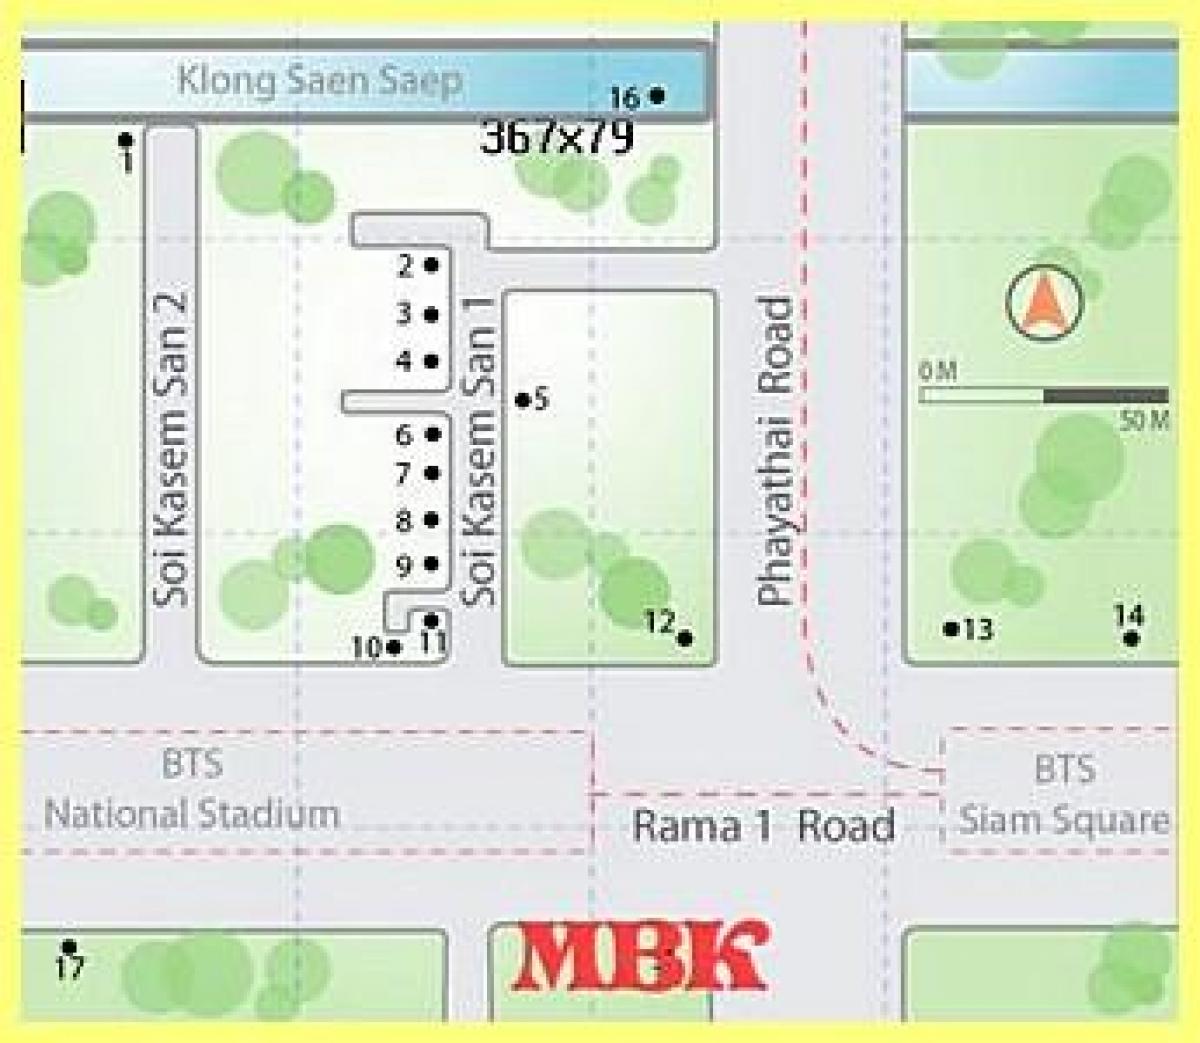 mbk centro comercial en bangkok mapa